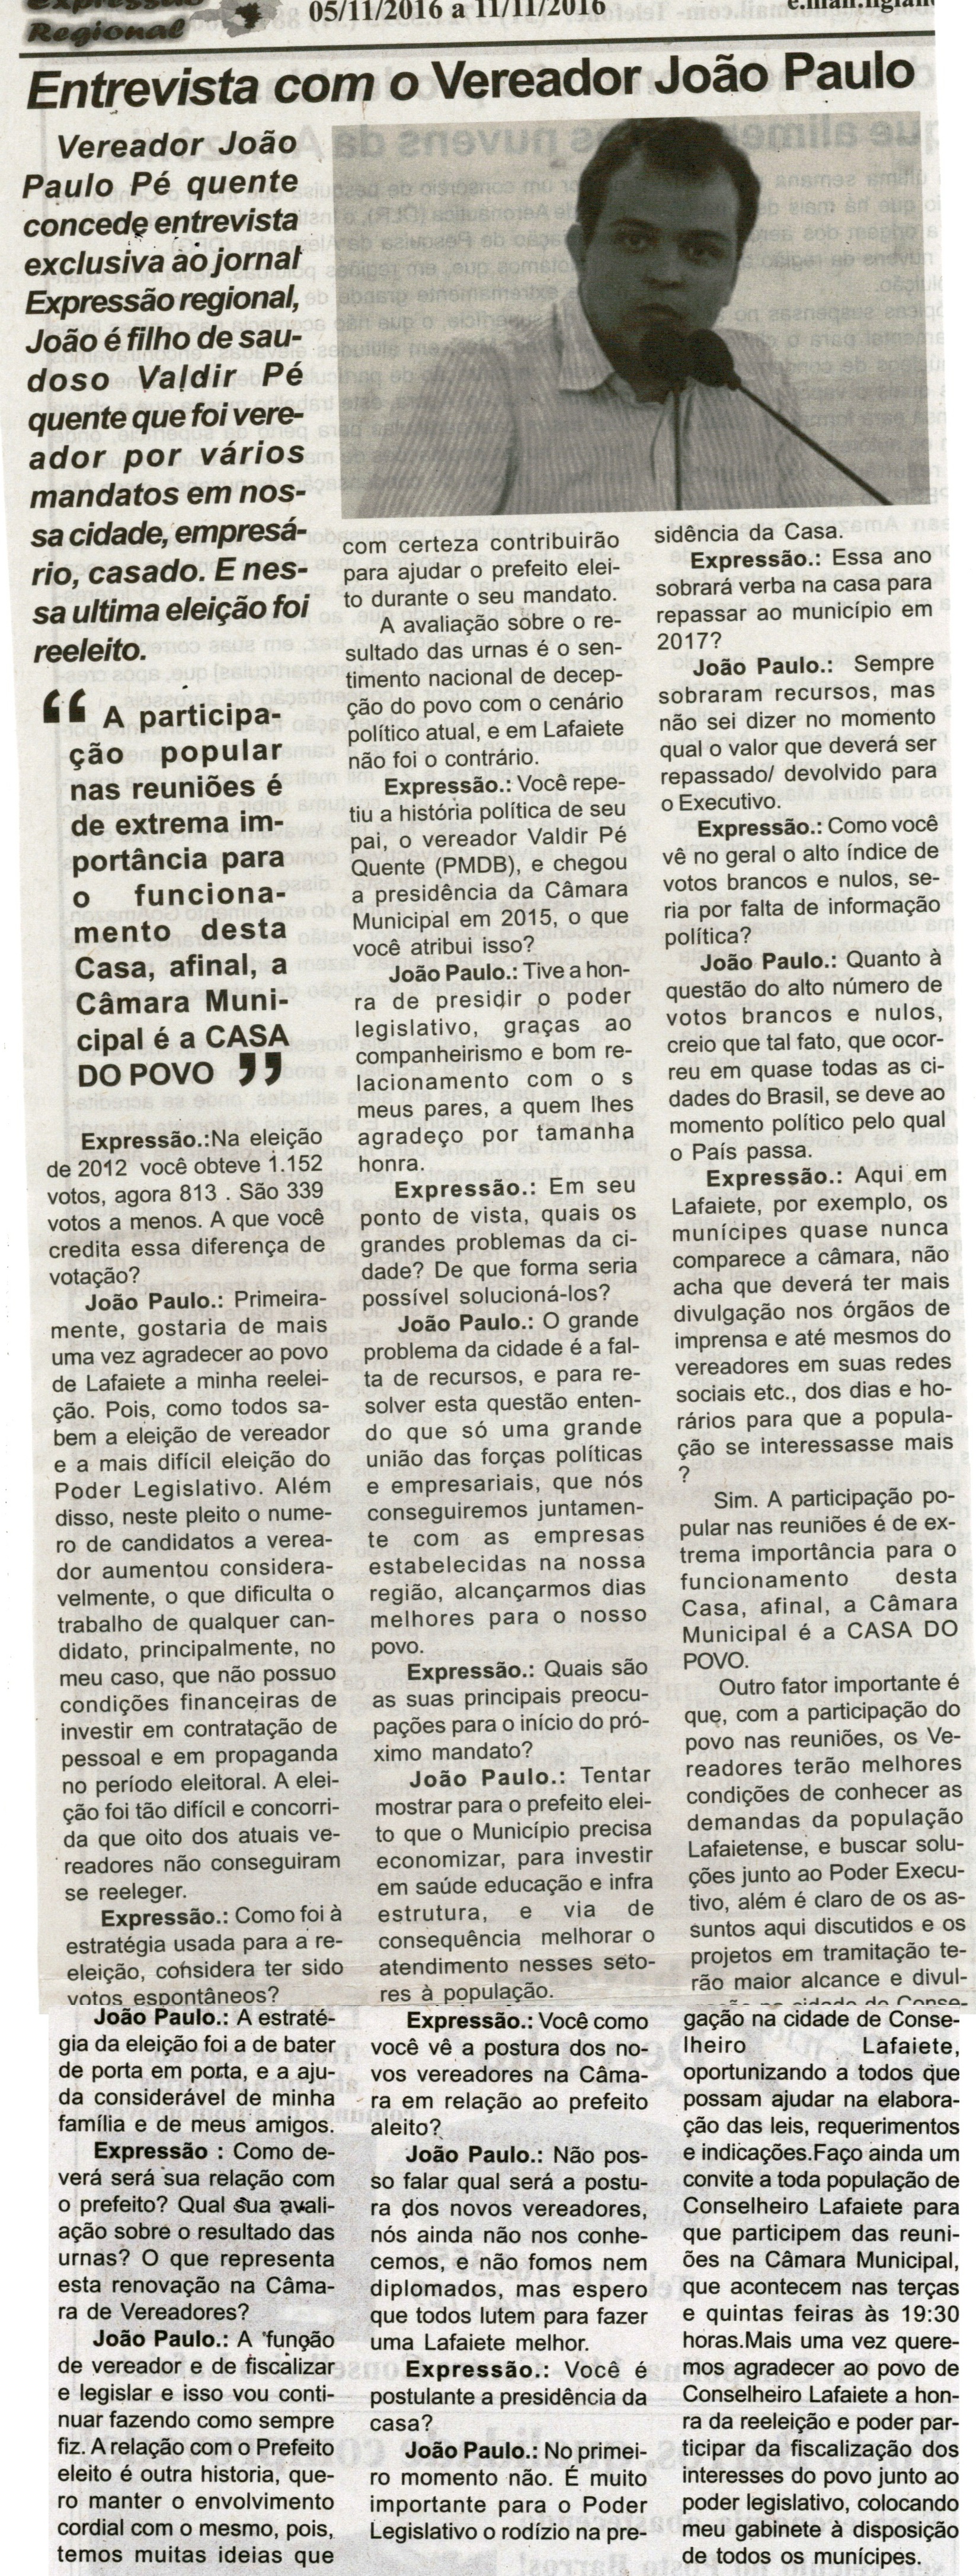 Entrevista com Vereador João Paulo.Jornal Expressão Regional, Conselheiro Lafaiete, 05 a 11 nov. 2016, 454X ed. p. 3.